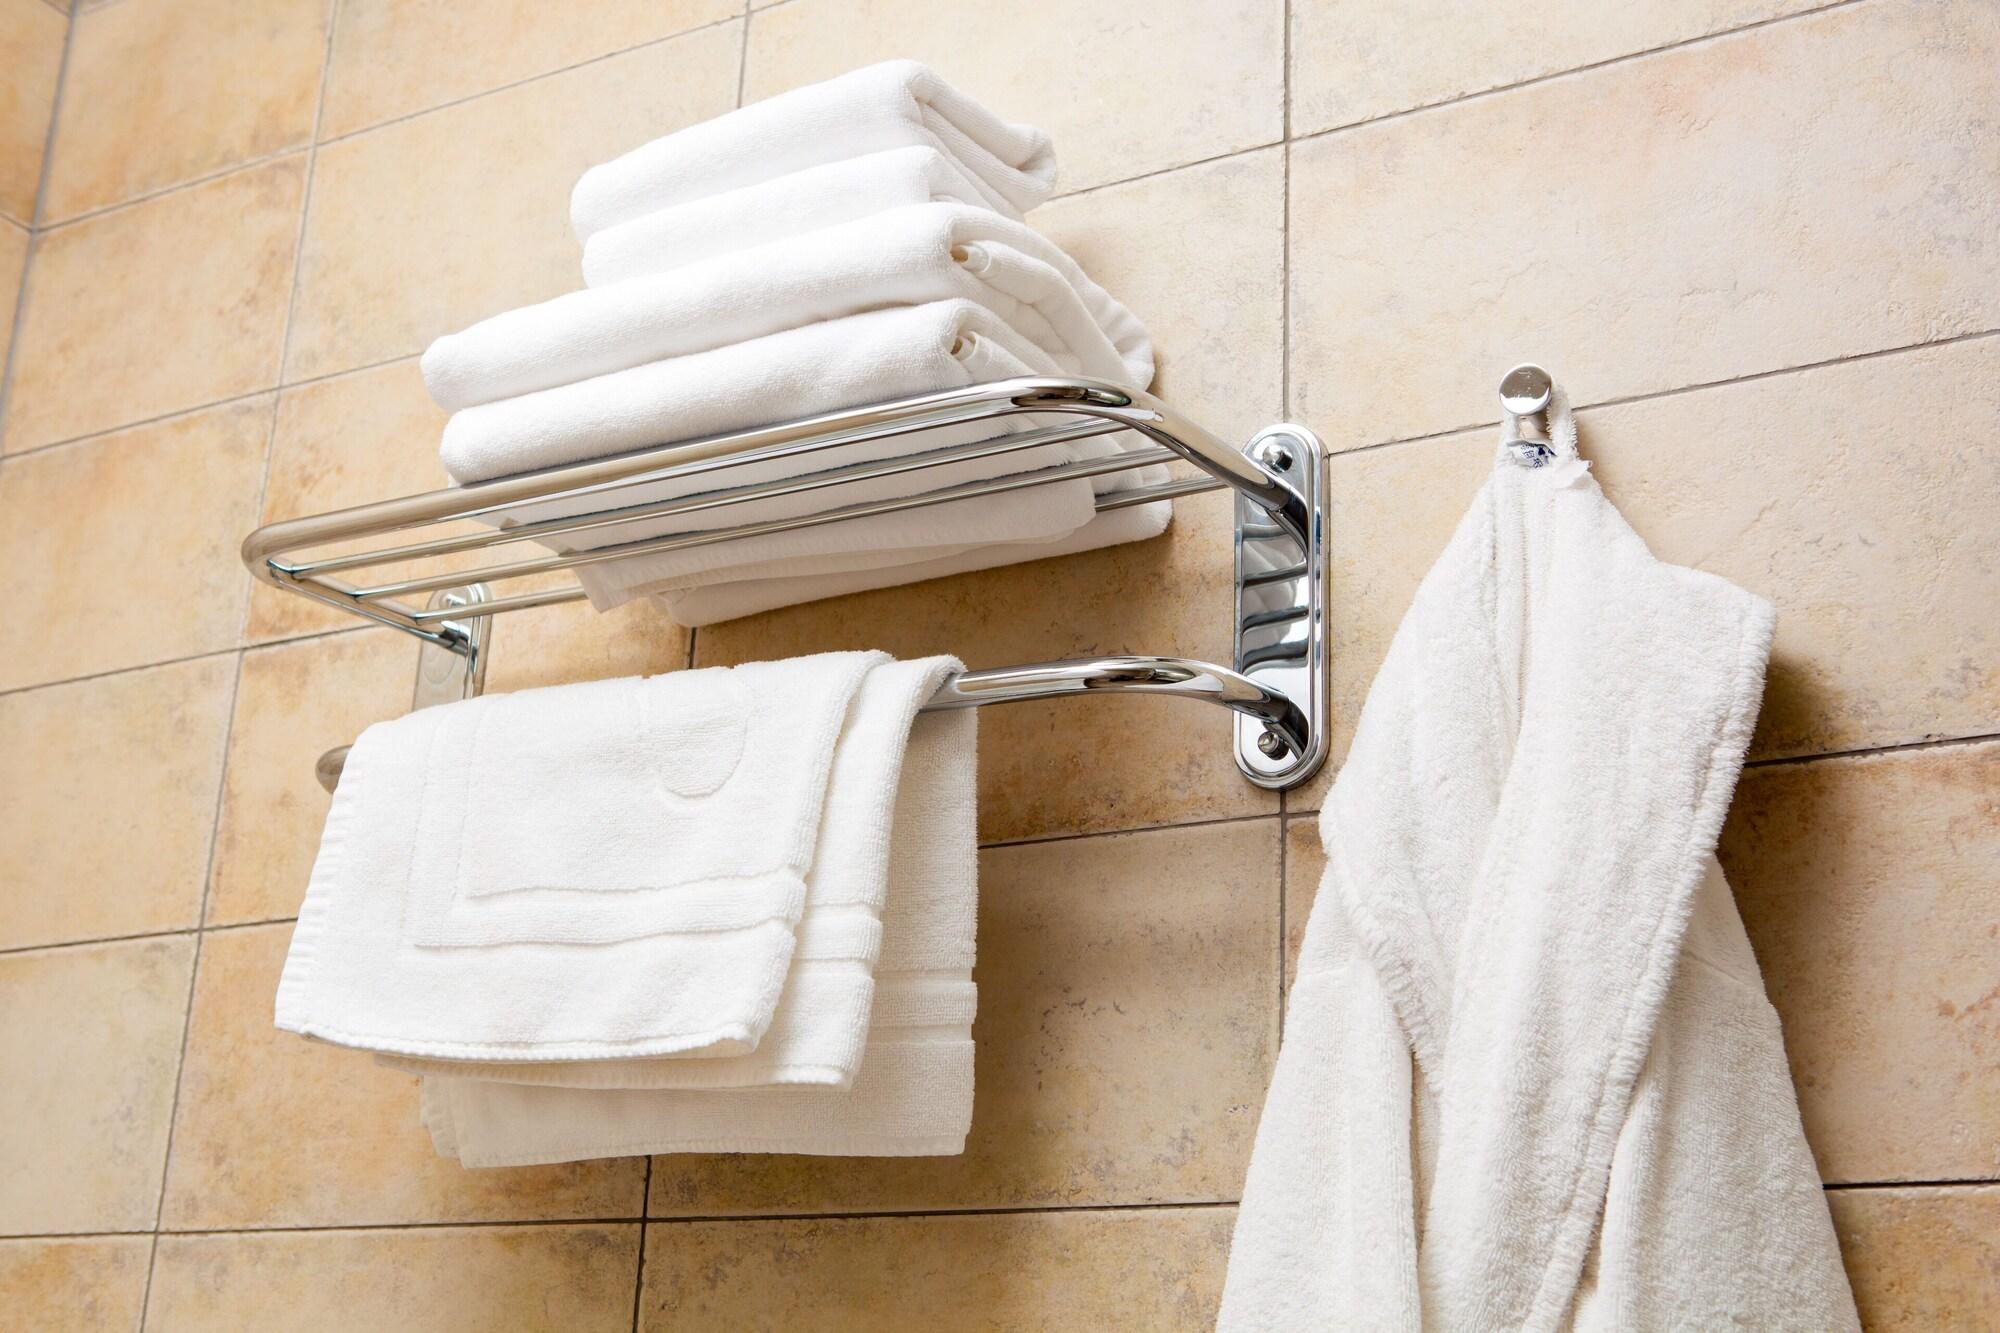 Сколько нужно полотенец. Ванная полотенца. Полотенца в гостиничном номере. Полотенце в ванной отель. Полотенца и халаты в ванной комнате.